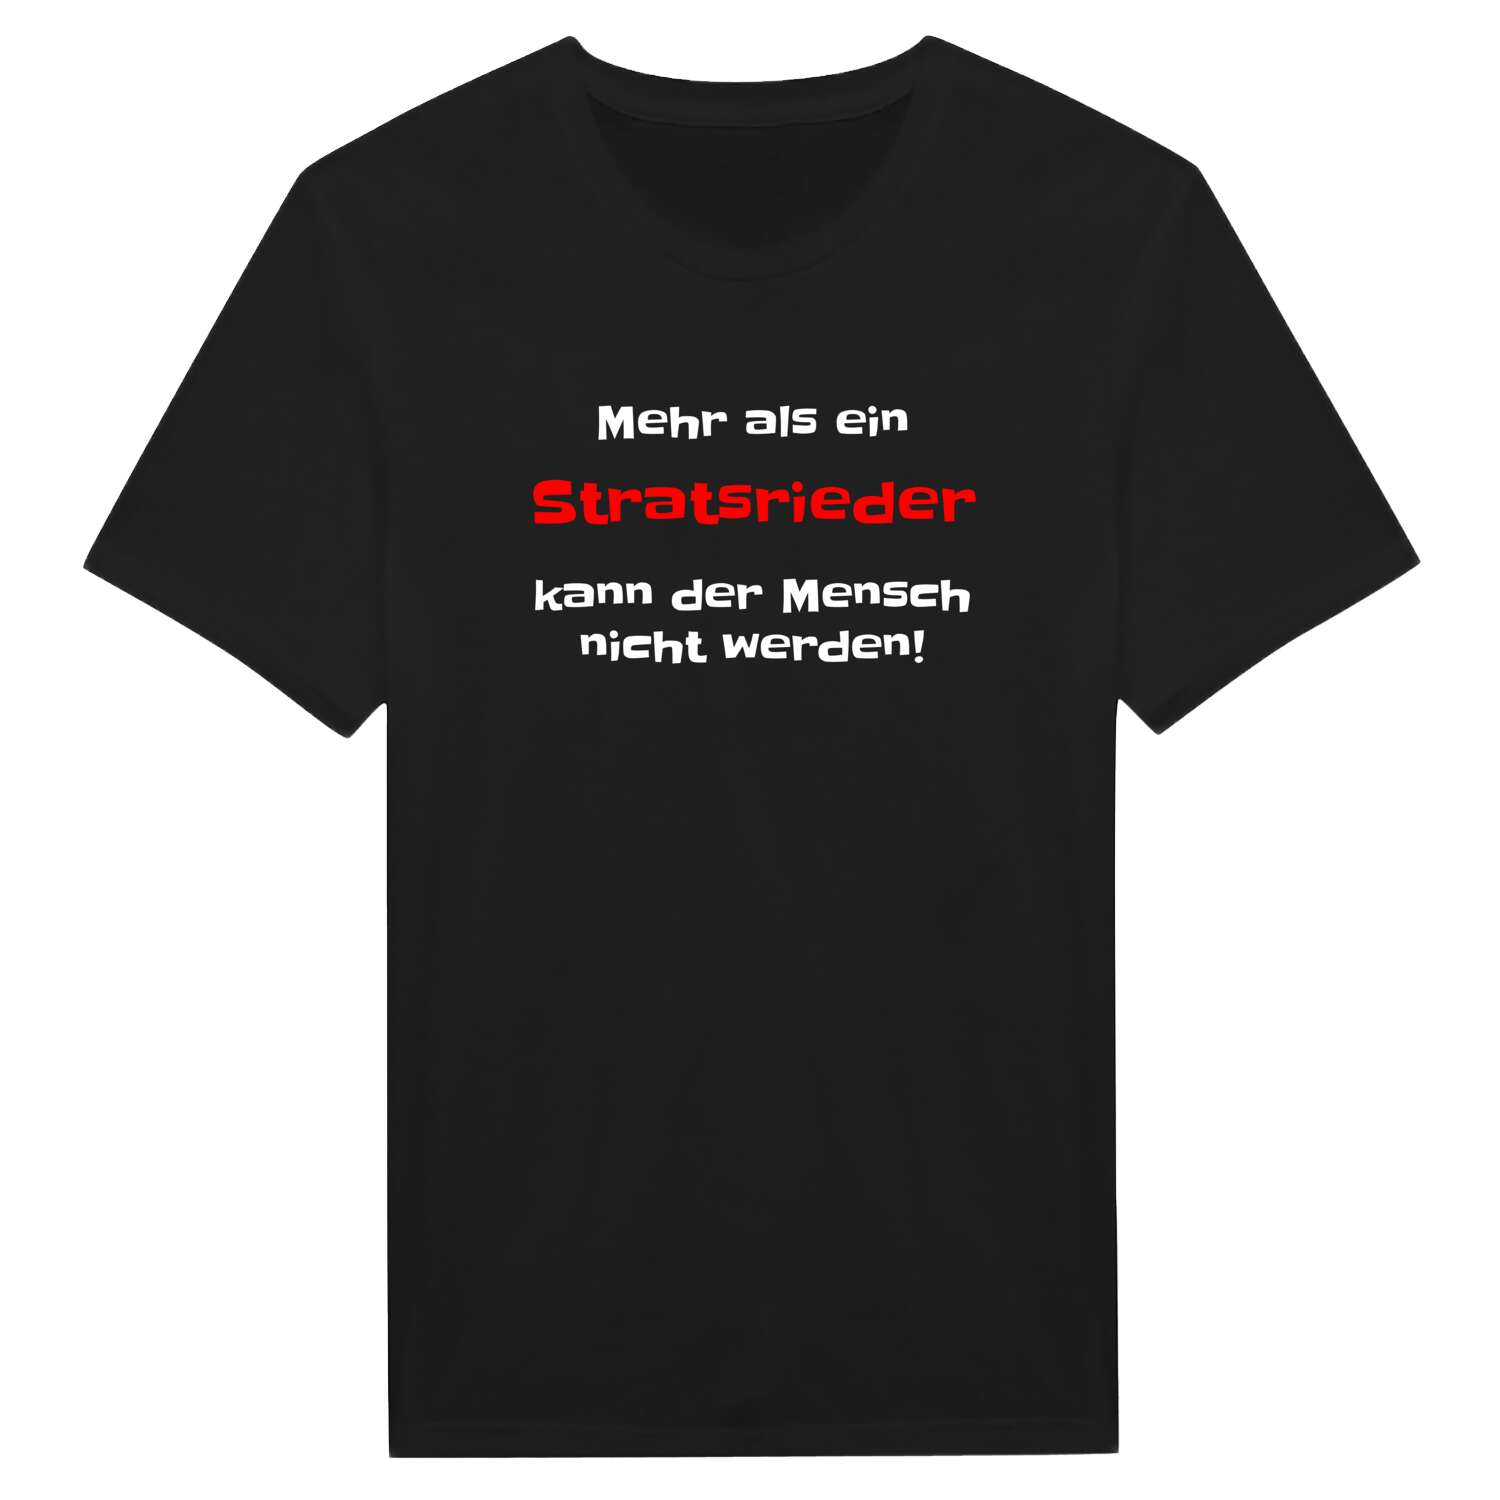 Stratsried T-Shirt »Mehr als ein«